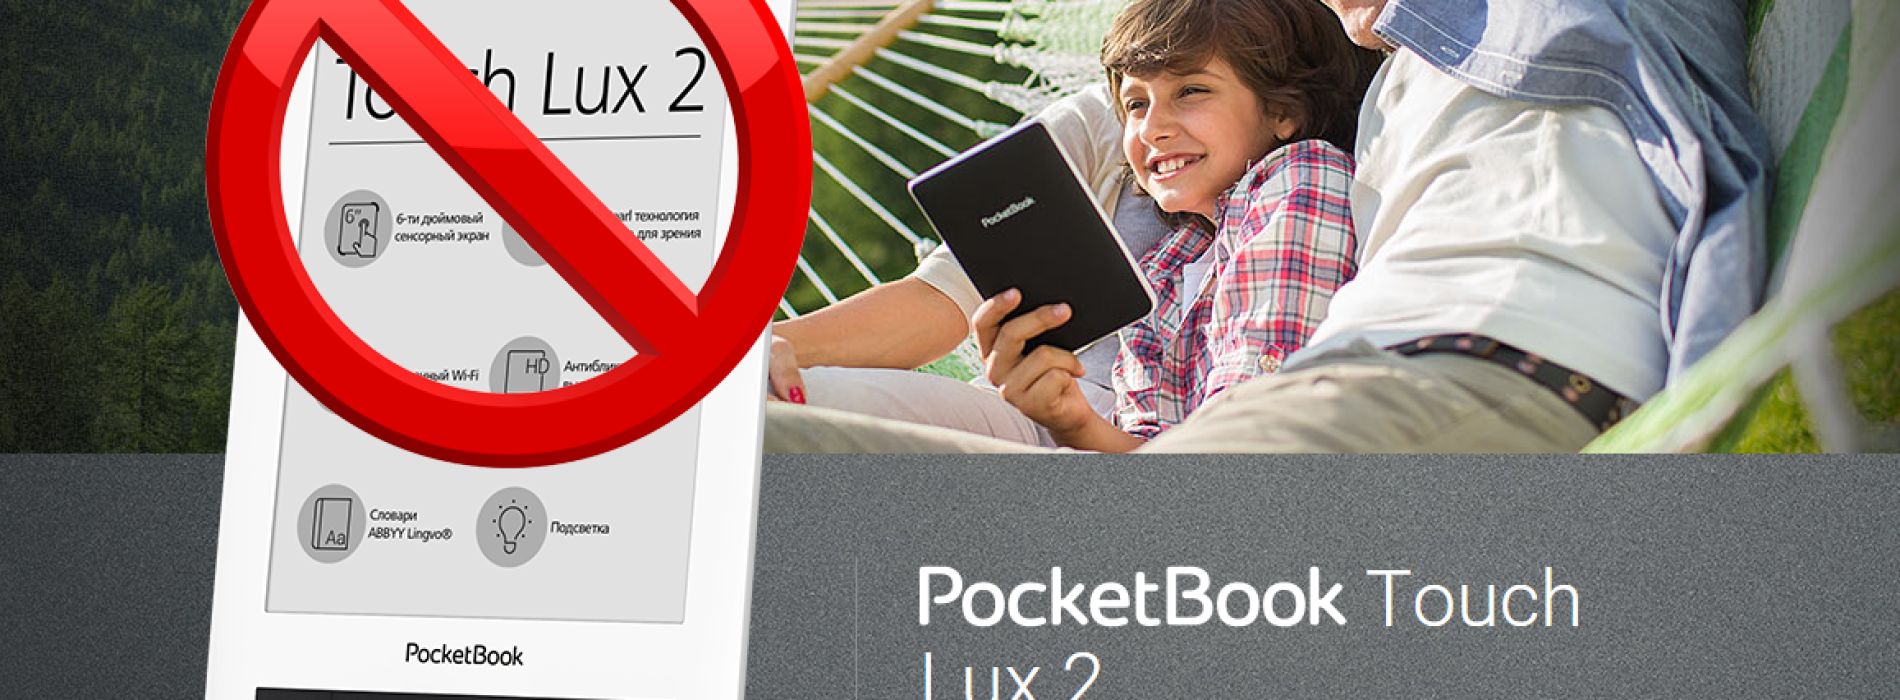 Čeká nás v dubnu PocketBook Touch Lux 3?